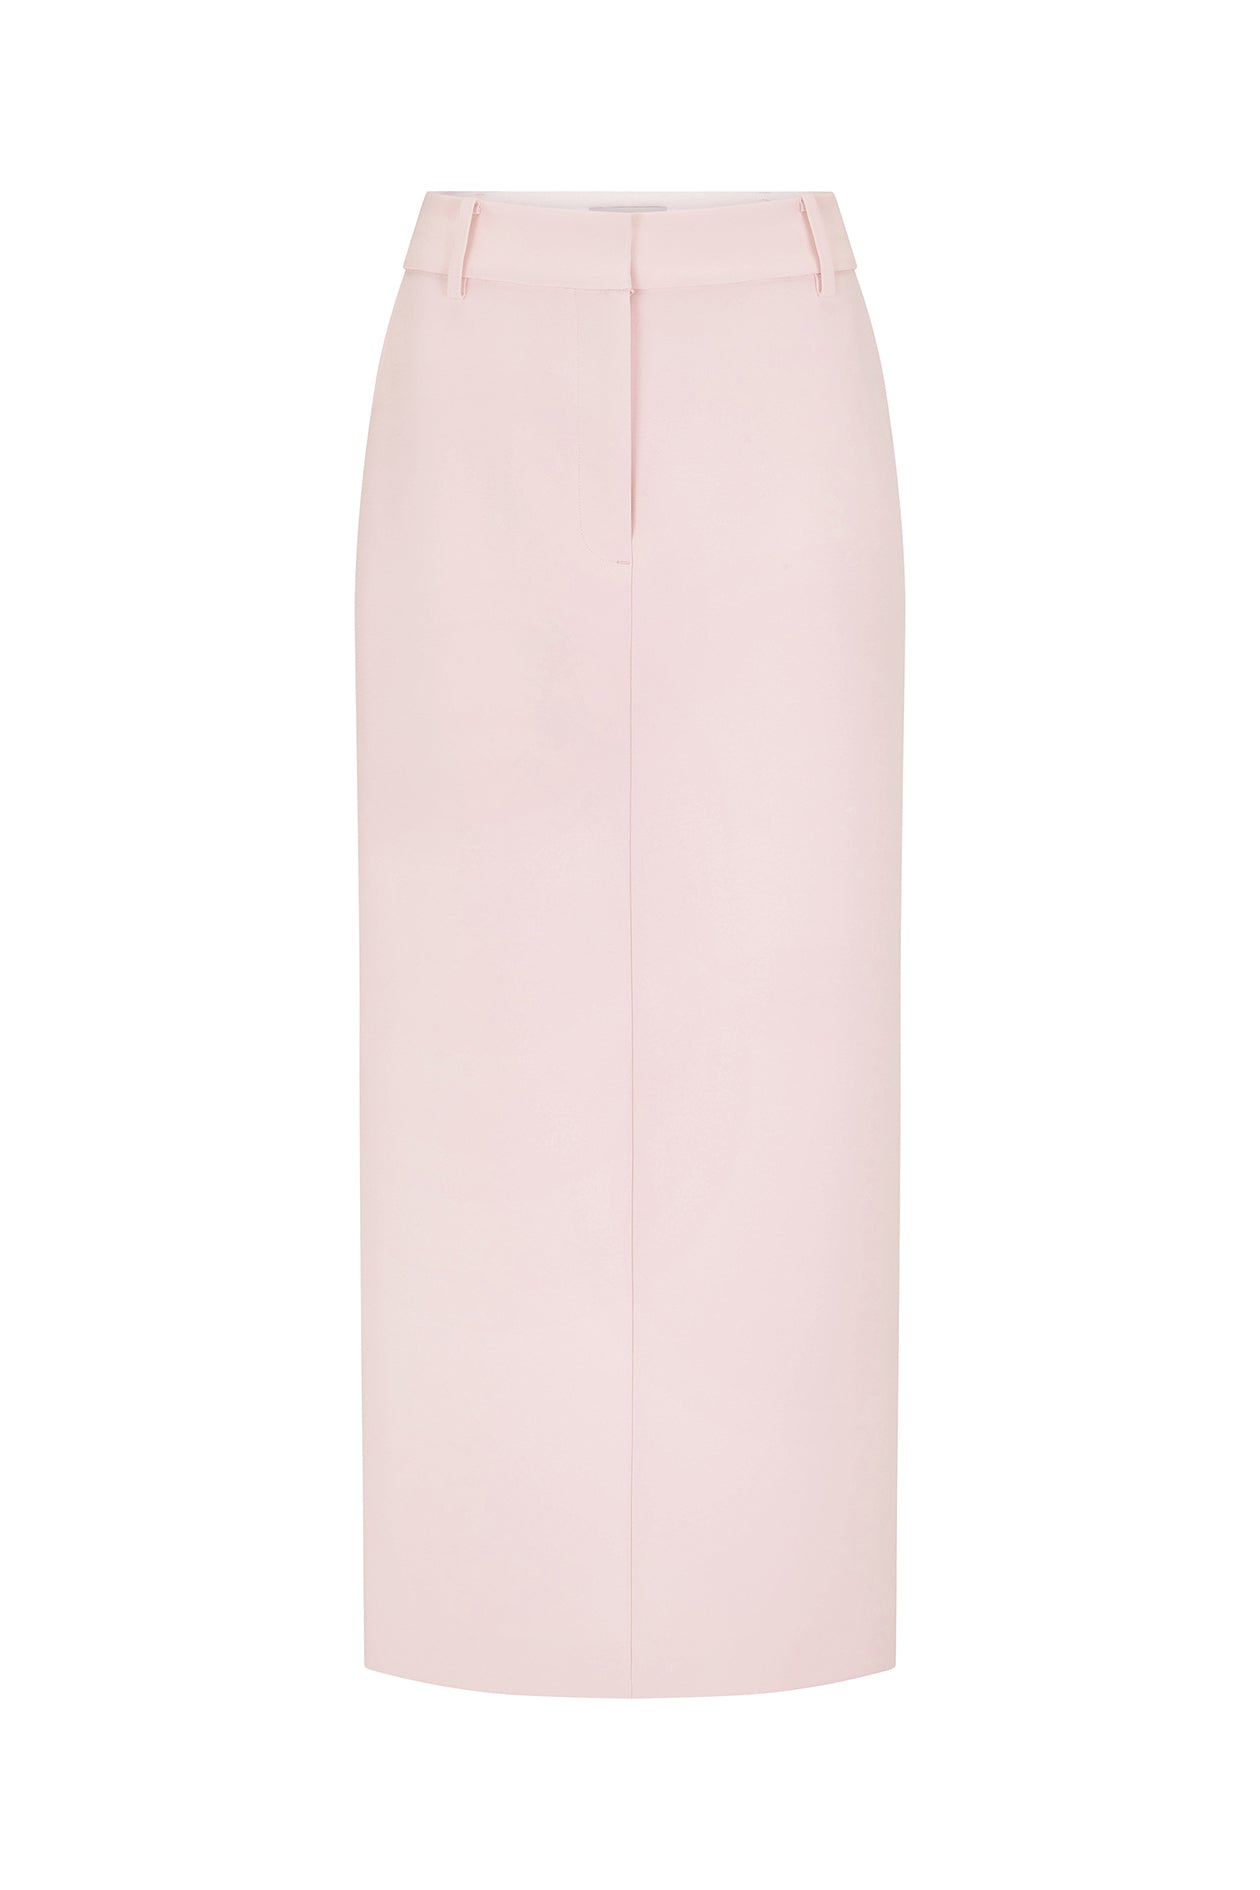 Long Jas Skirt Powder Pink